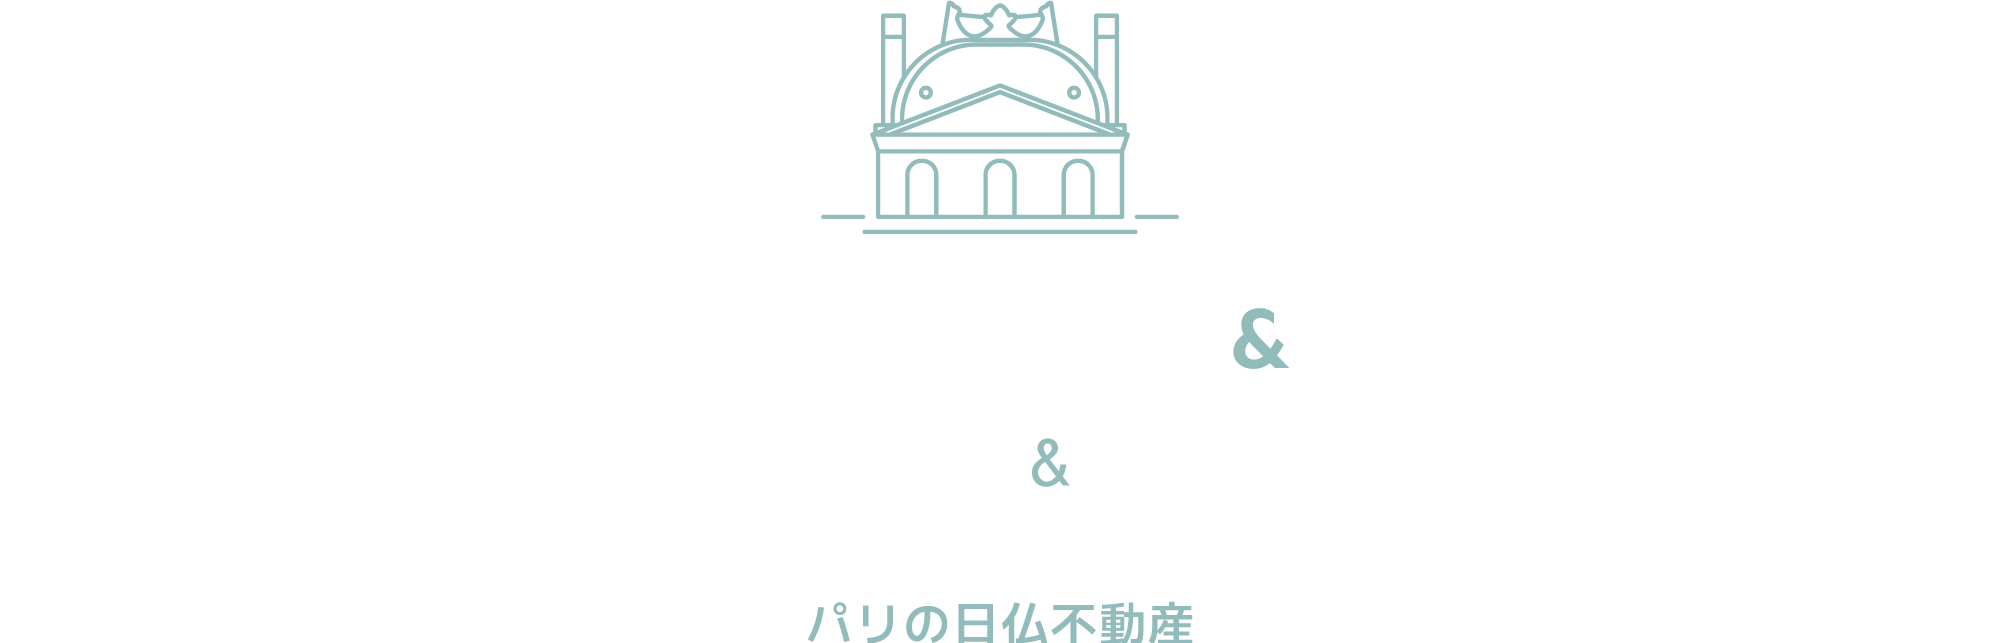 フランス不動産&パートナーズ FRANCE FUDOSAN & PARTNERS